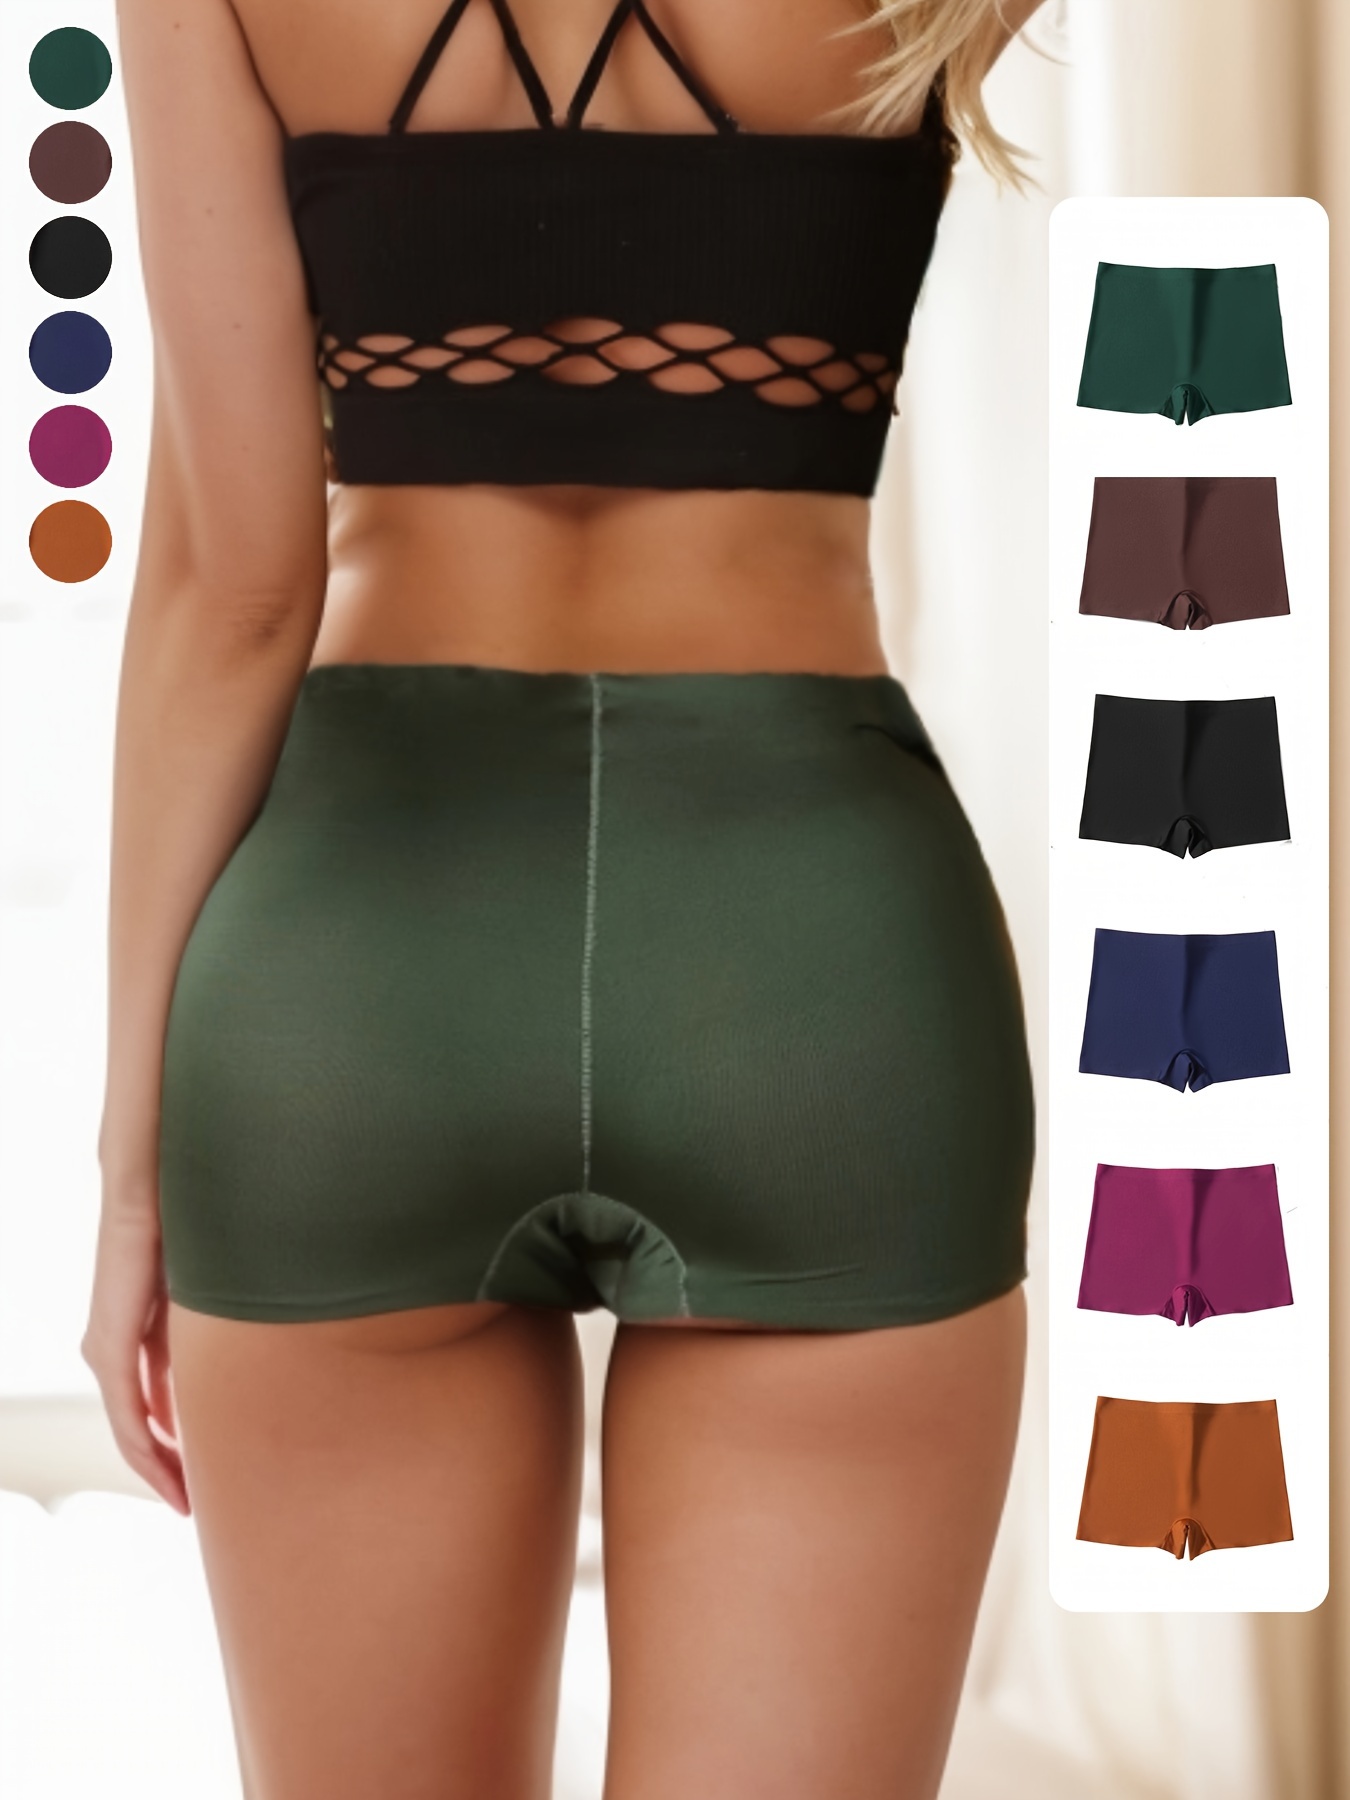 Spandex Underwear Women - Temu